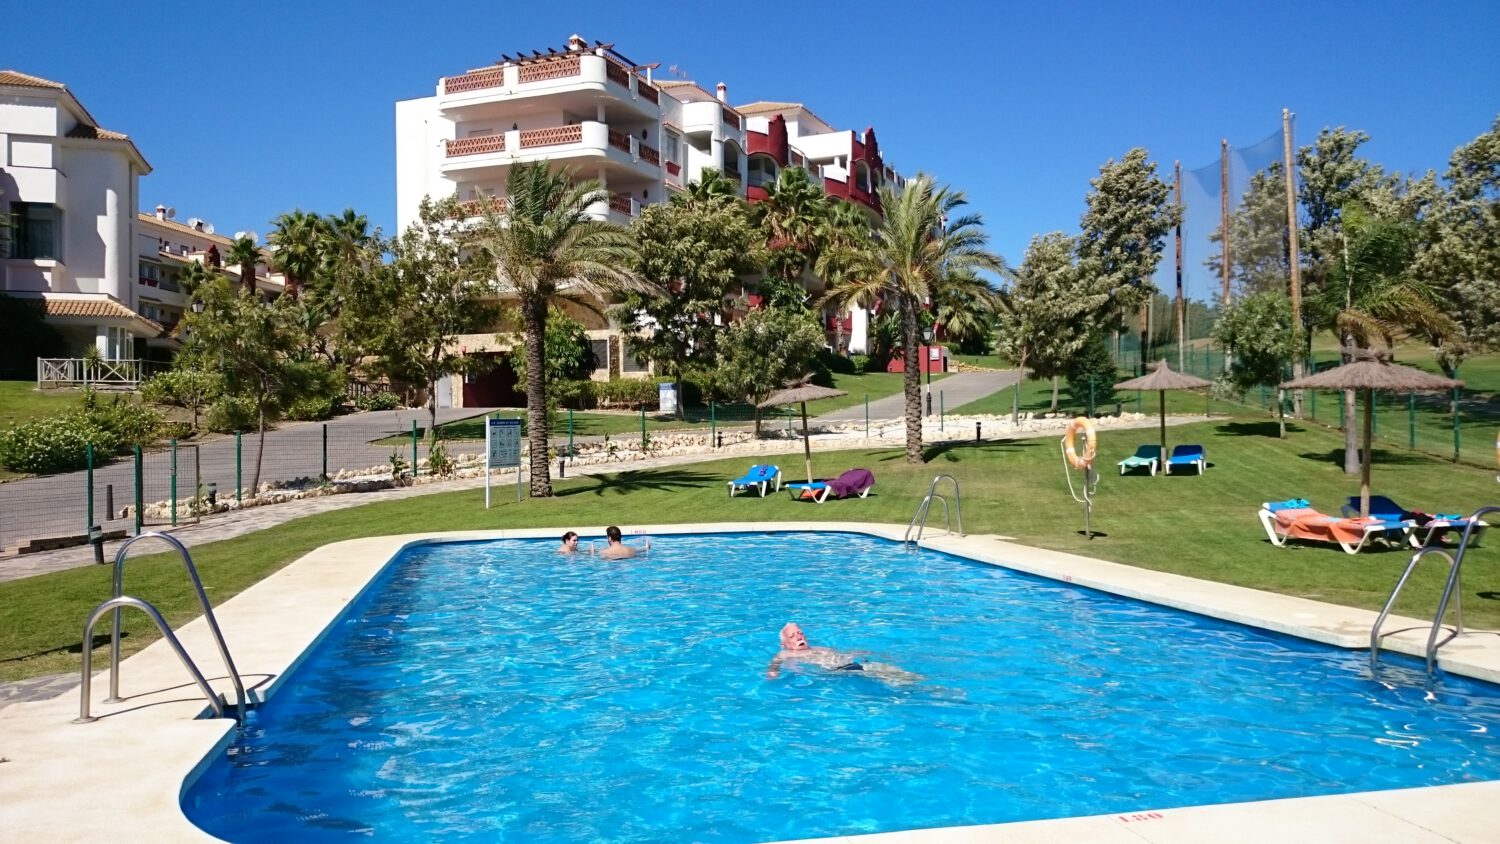 Tweede zwembad appartement Casanass in Zuid Spanje